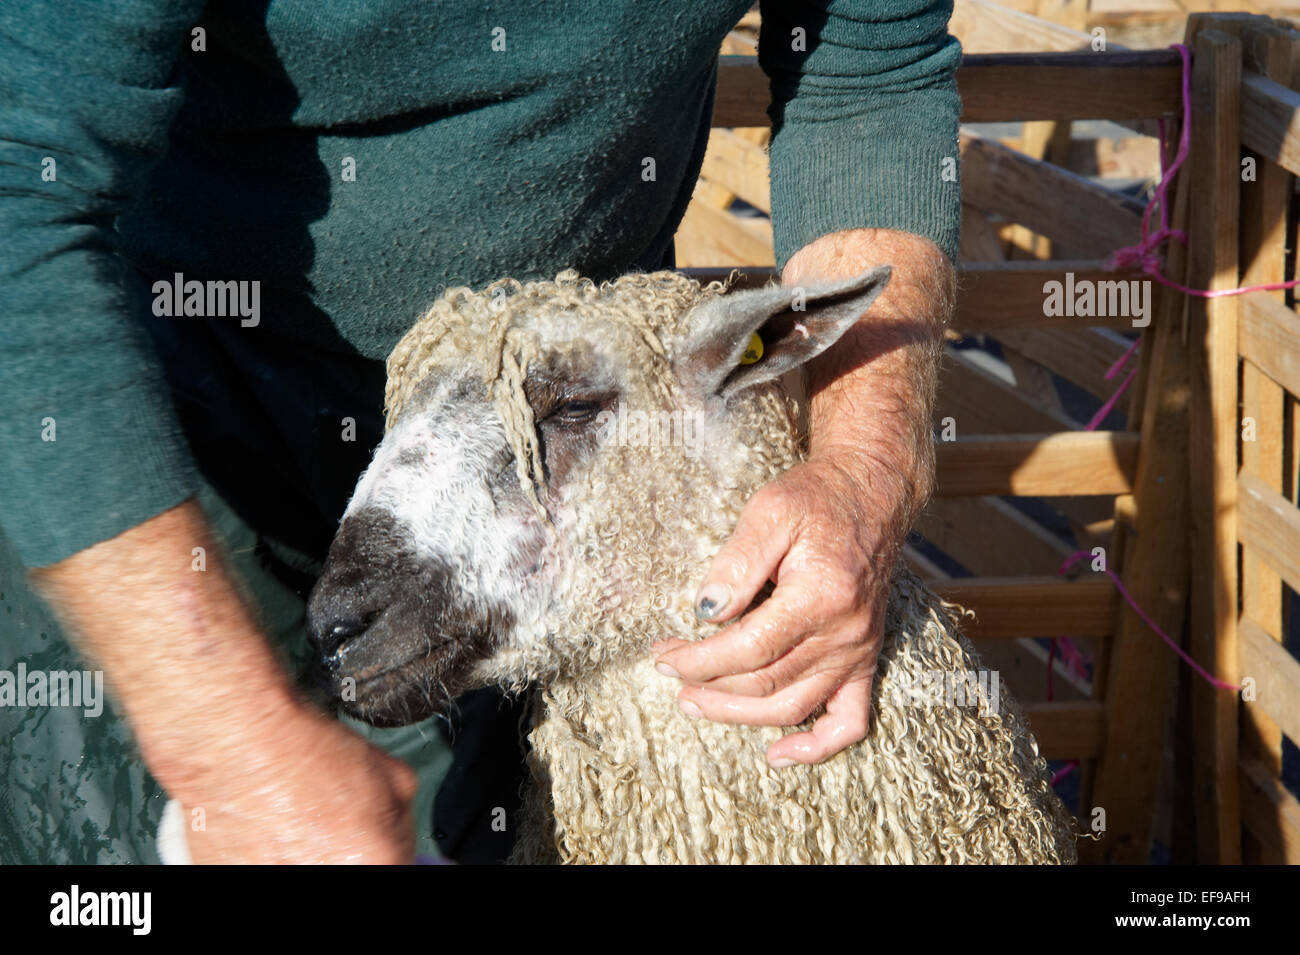 Les moutons d'être lavée à Masham, juste des moutons dans le Yporkshire, North Yorkshire Dales Banque D'Images